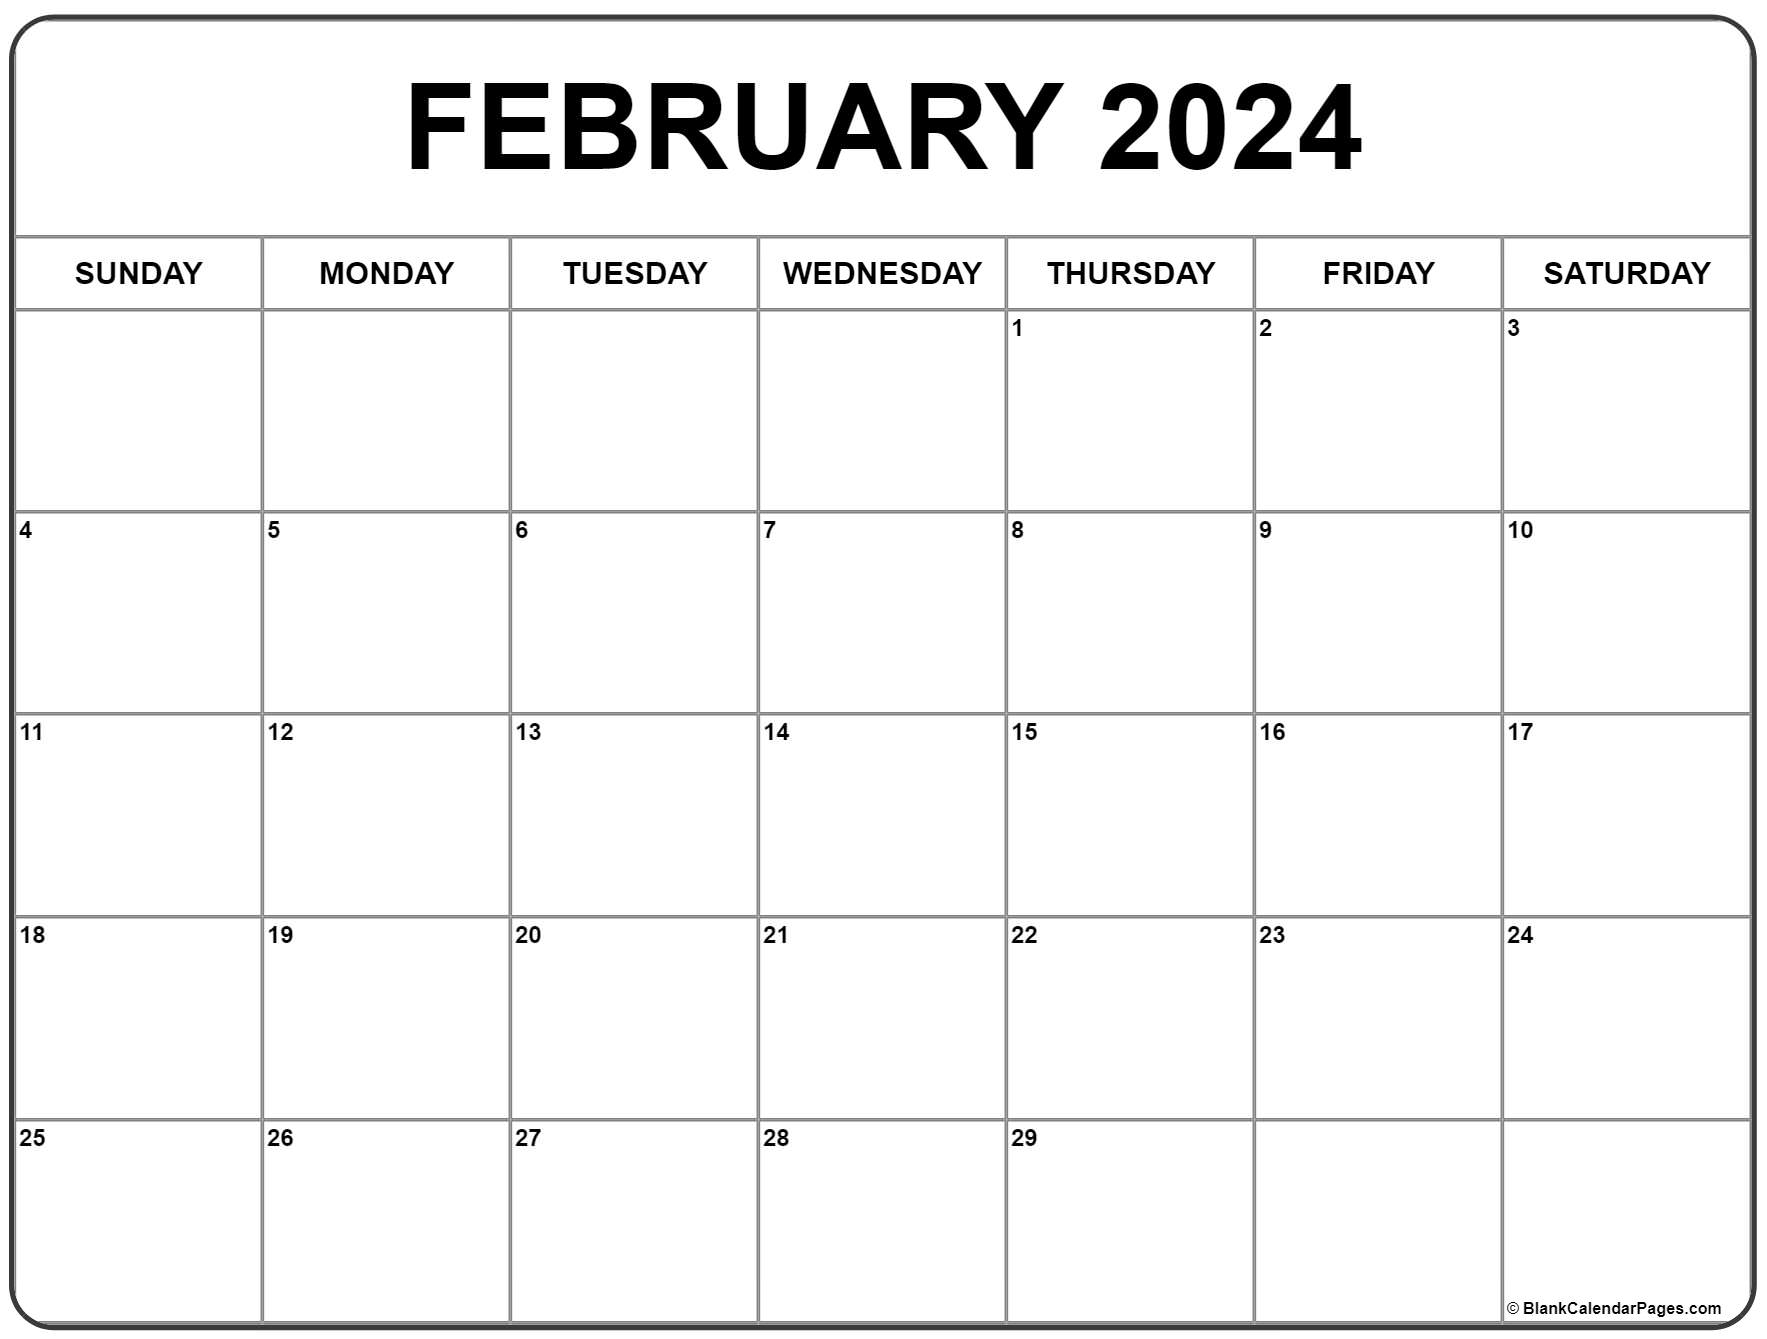 February 2024 Calendar | Free Printable Calendar for Free February 2024 Printable Calendar